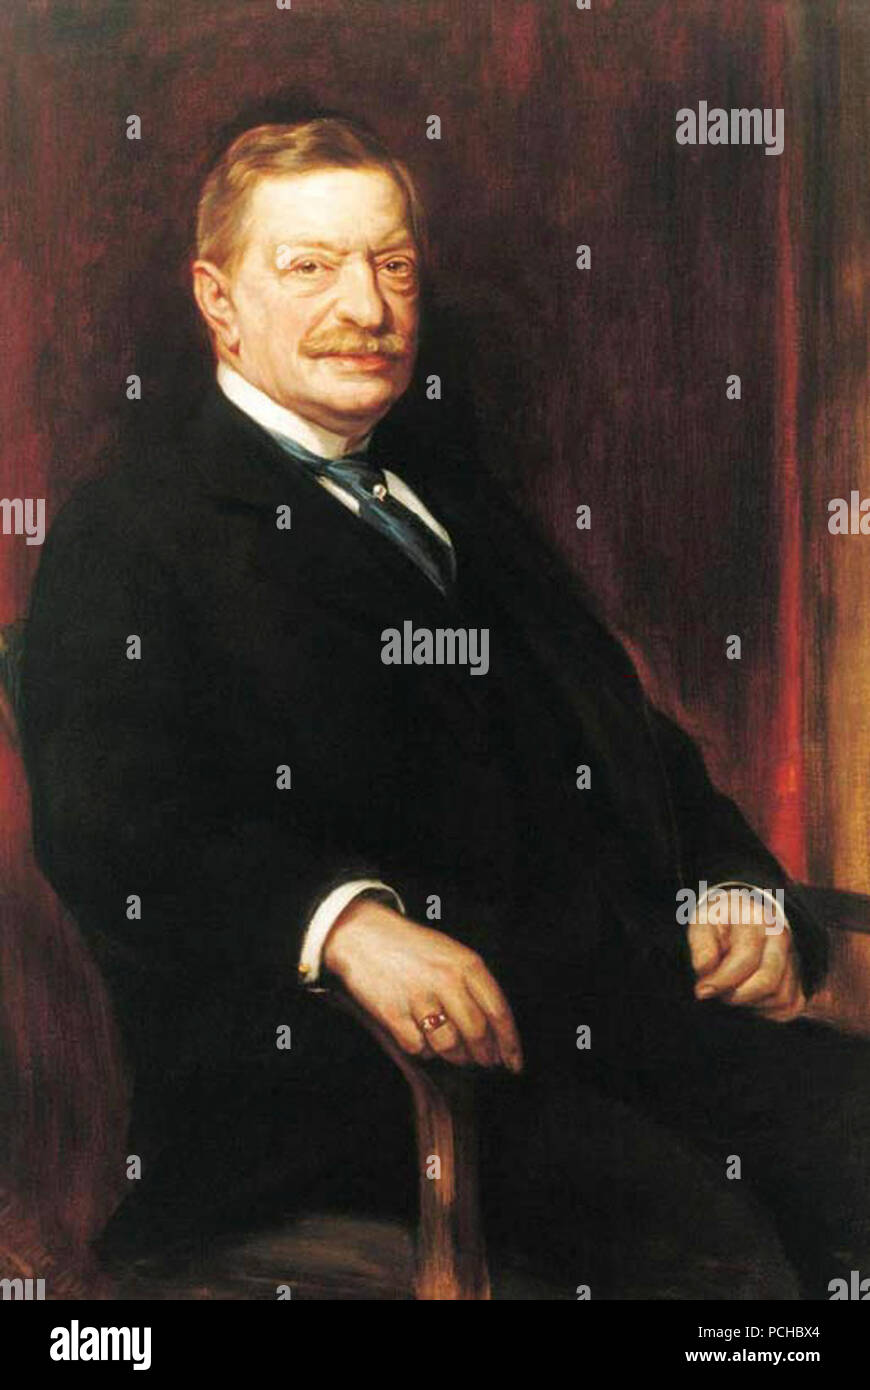 Albert von Oppenheim (1834 - 1912). Stock Photo